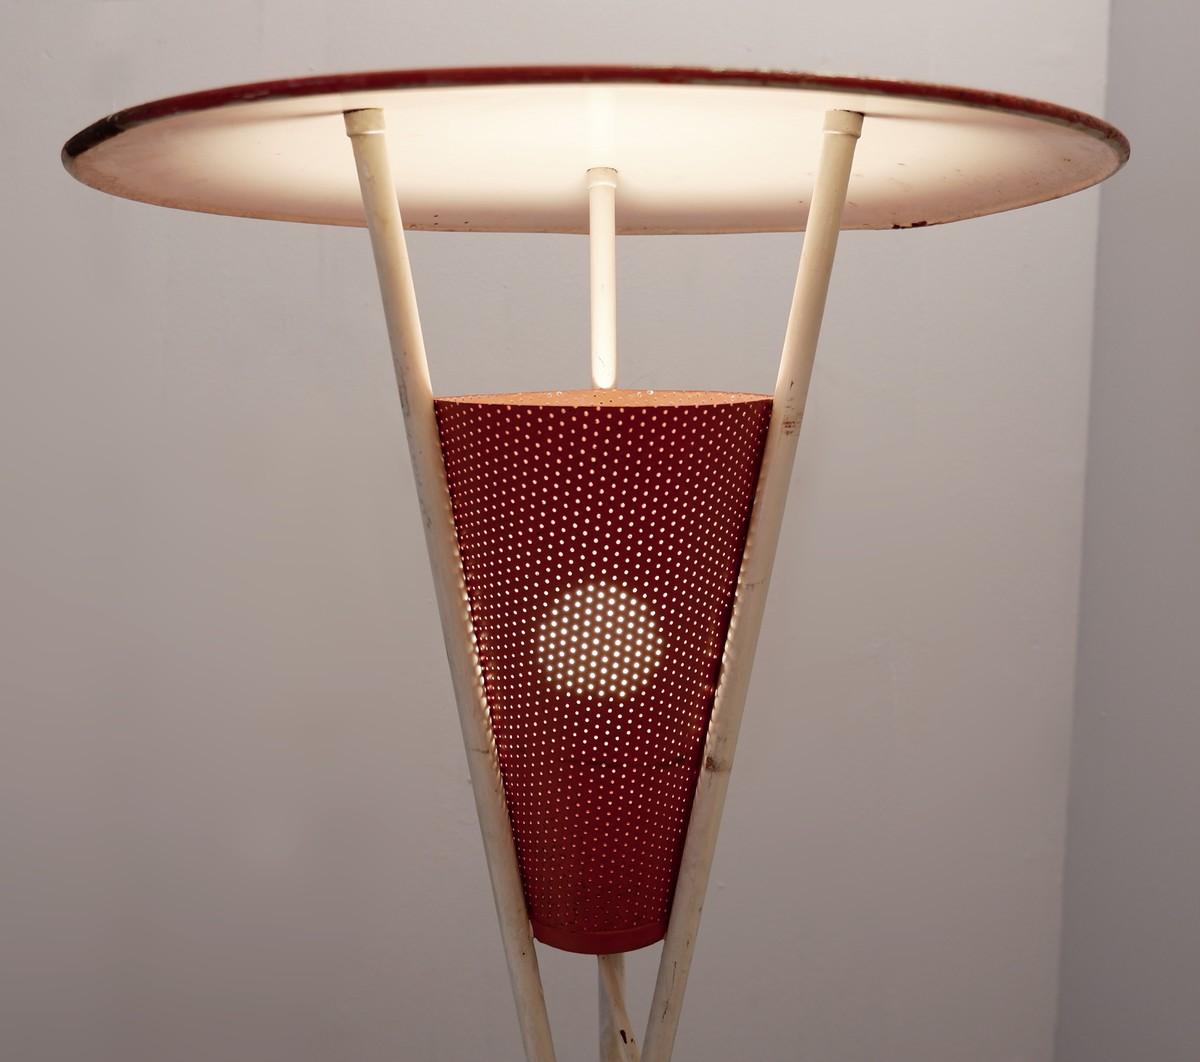 Tripod perforated metal floor lamp, 1950s.